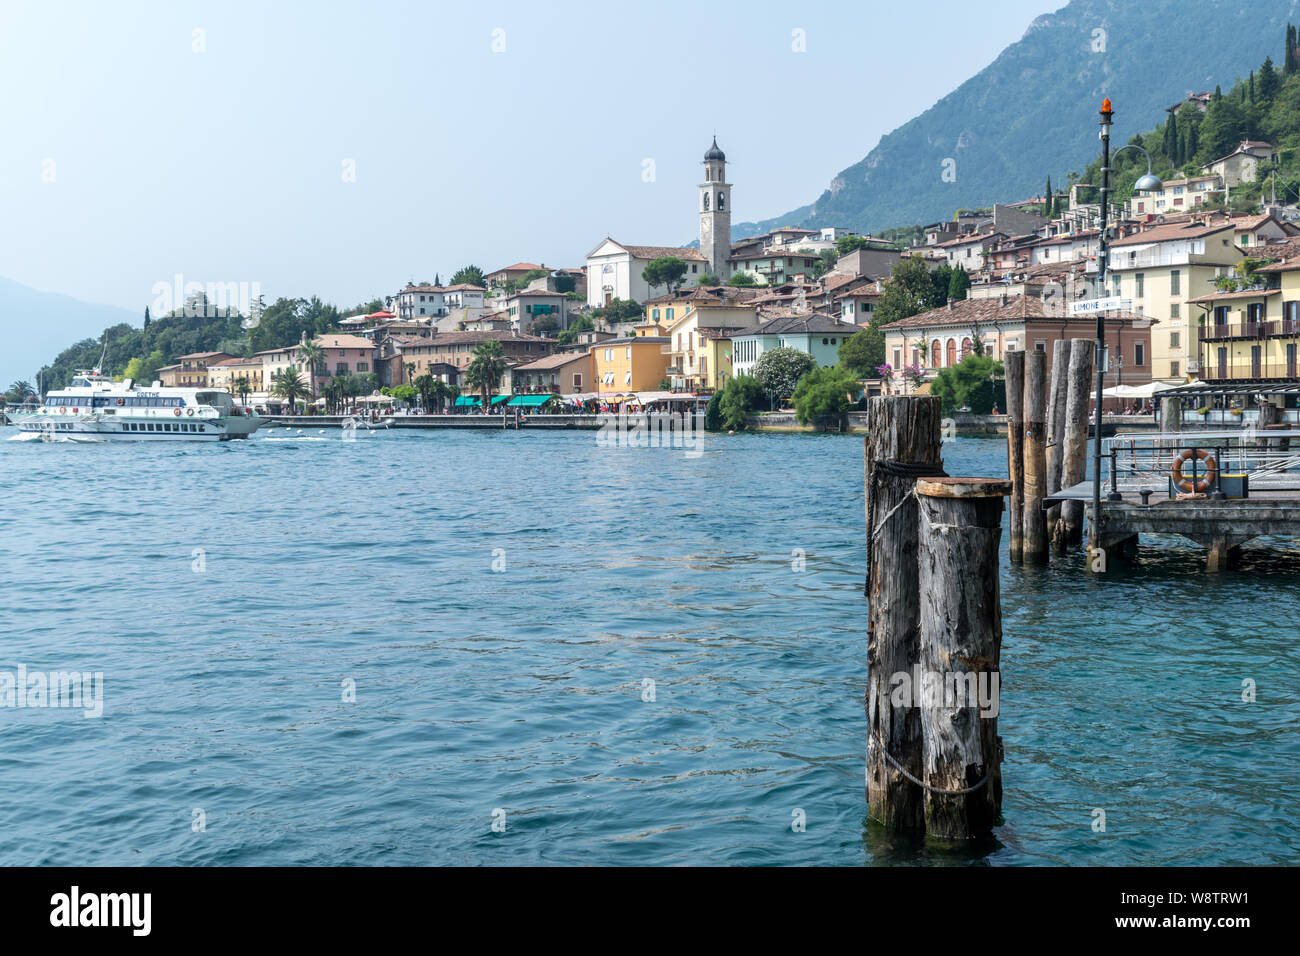 Limone, Italie - 24 juillet 2019 : c'est une vue au bord de l'eau du lac de Garde à Limone, Italie Banque D'Images